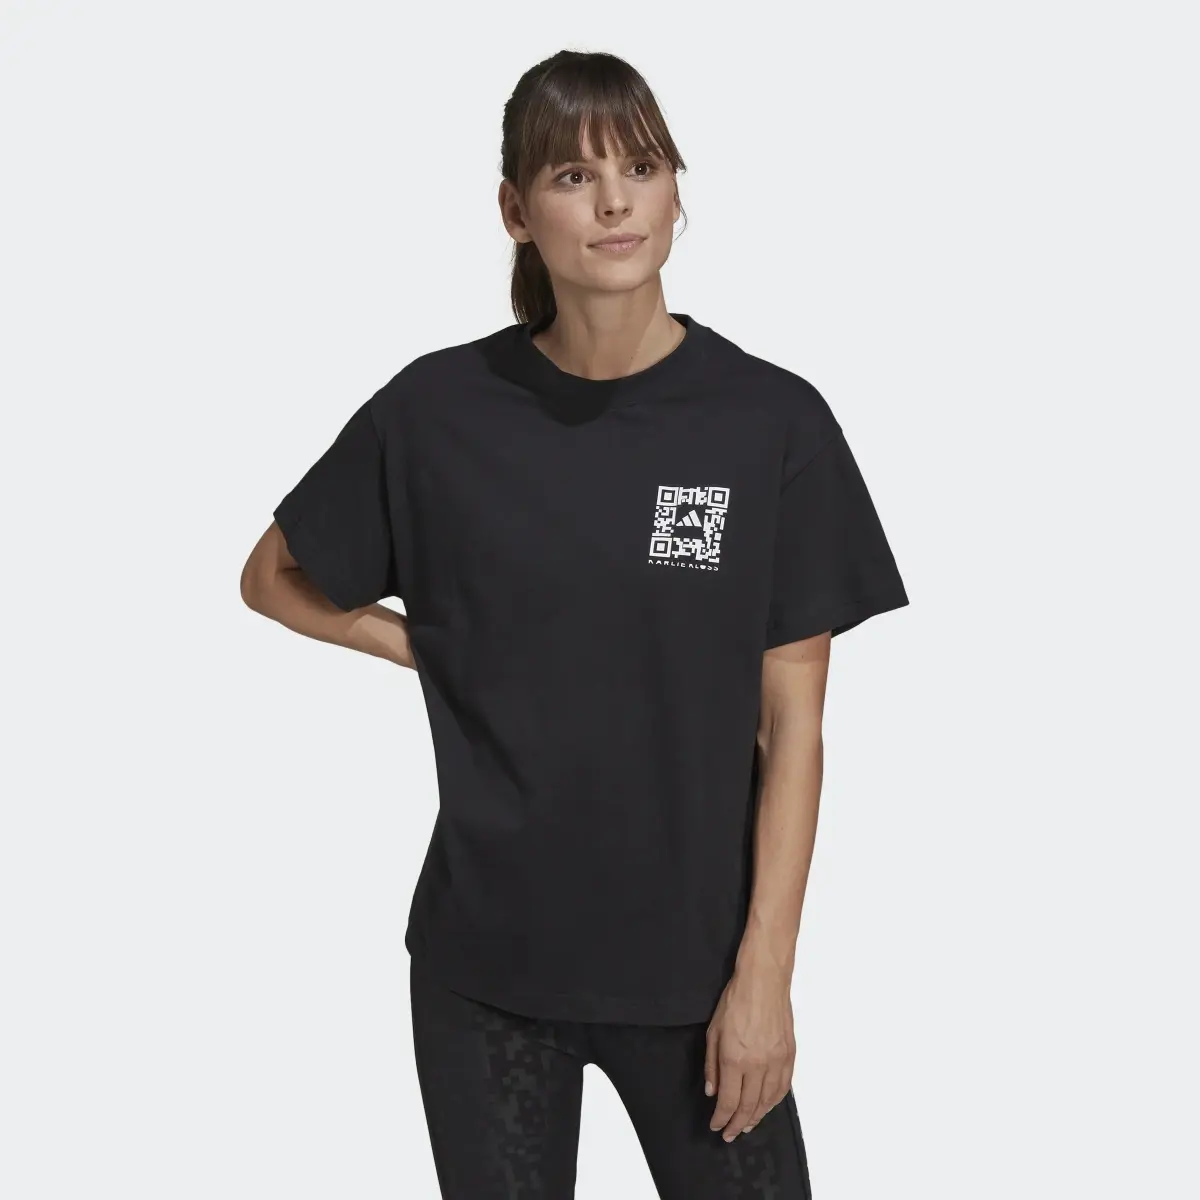 Adidas x Karlie Kloss Crop T-Shirt. 2